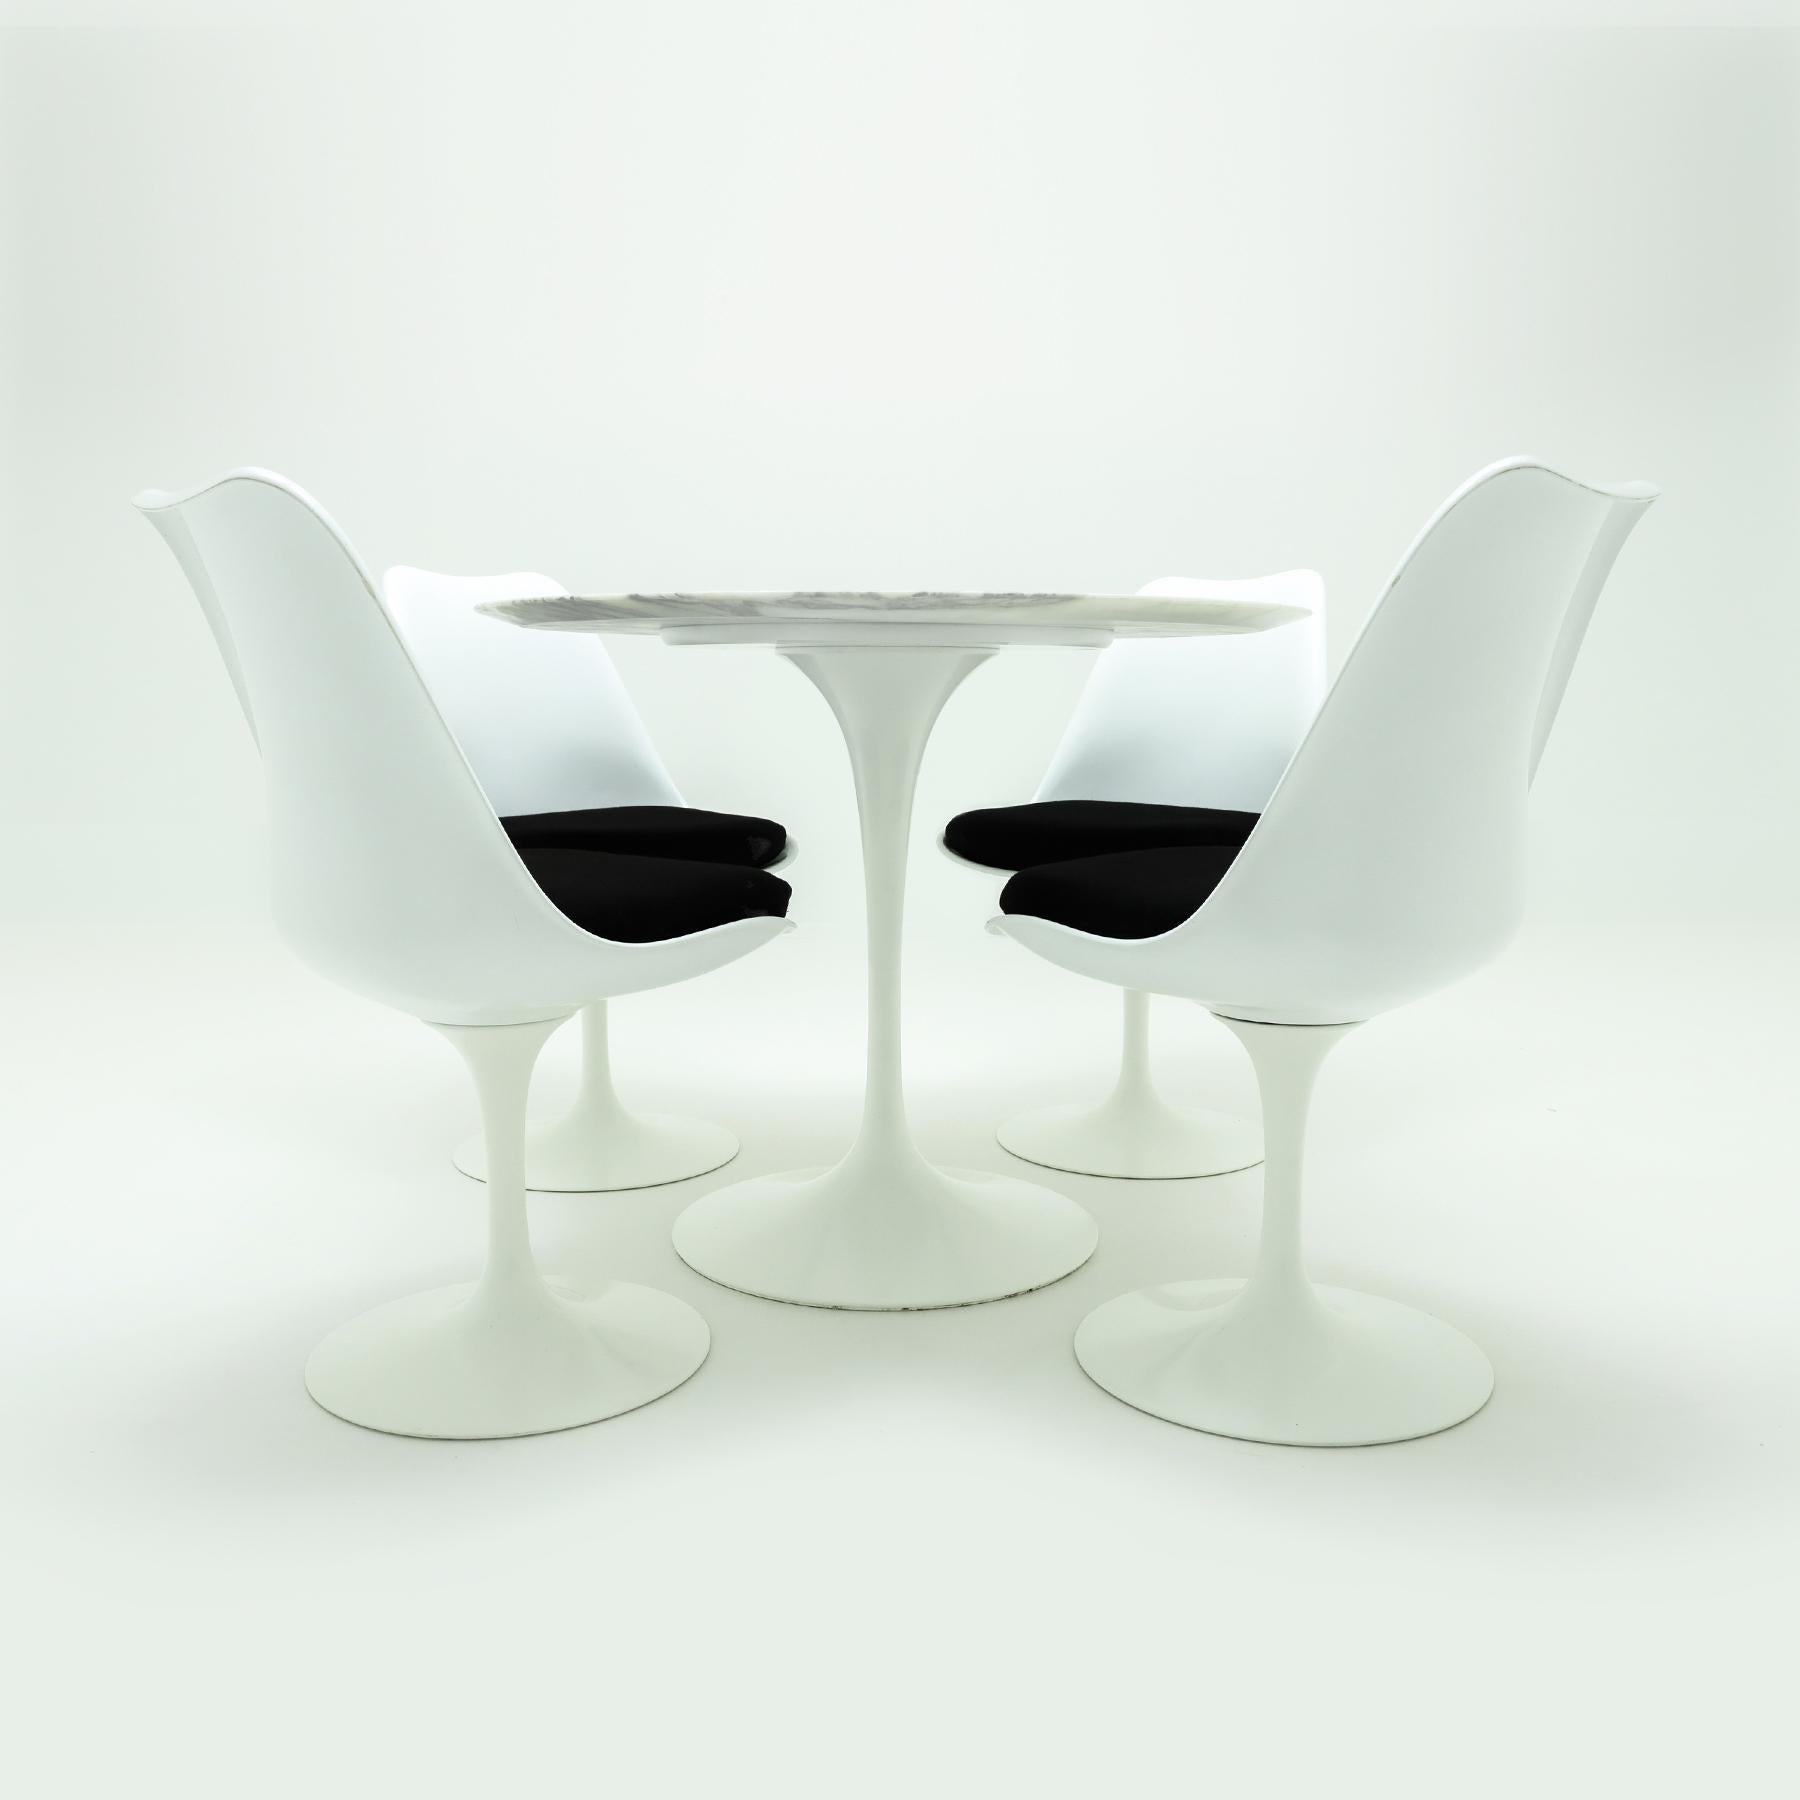 Ensemble de salle à manger tulipe blanc iconique d'Eero Saarinen, Knoll, avec un plateau en marbre Calacatta et 4 chaises tulipe Saarinen, Knoll assorties, avec leur pad et leur housse d'origine. 

Il s'agit d'une combinaison classique et